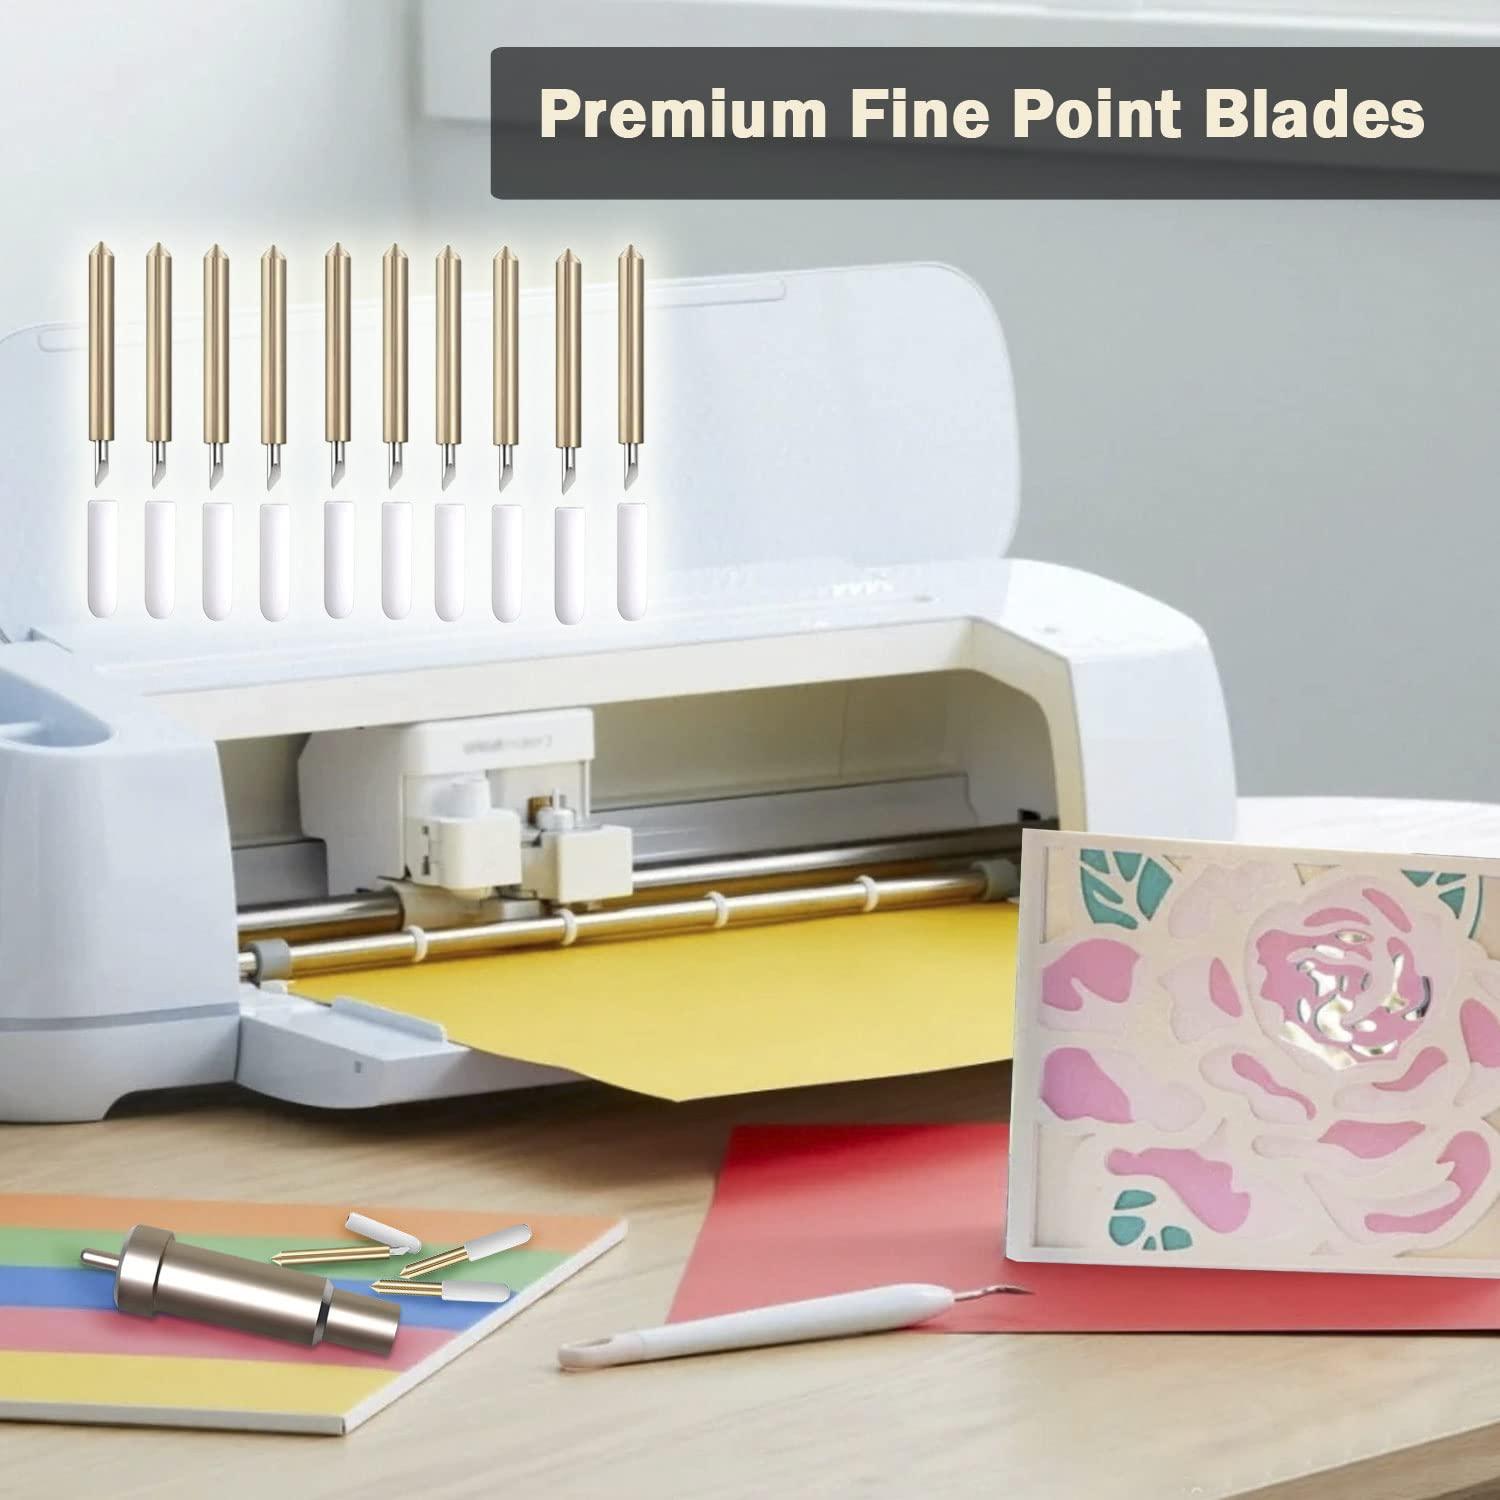 2 PCS Premium Fine Point BladeCompatible with Cricut Explore Air 2/Explore  3, Replacement Cutting Blades Compatible with Cicut Maker/Maker 3, Can Cut